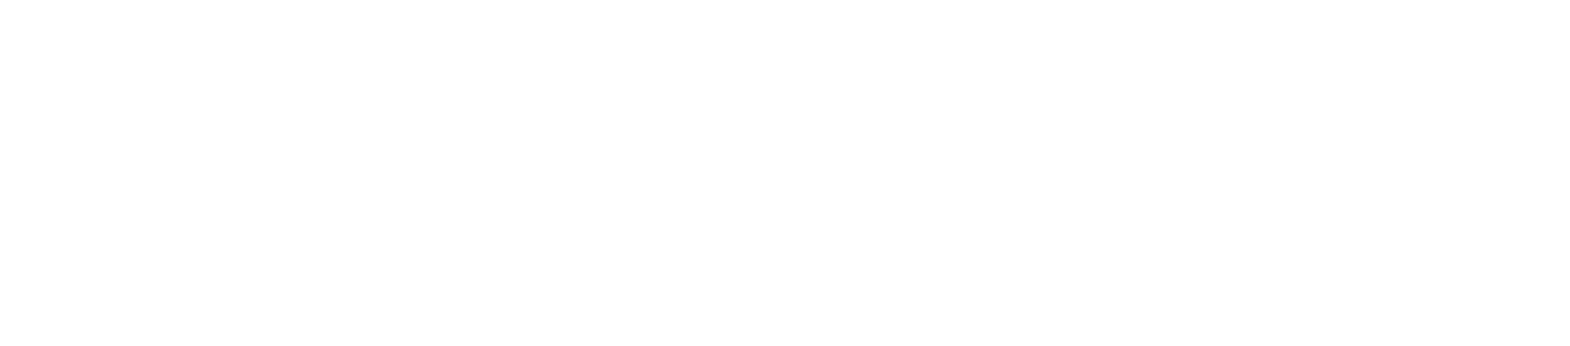 【会員限定】10,000 マイルボーナスキャンペーン